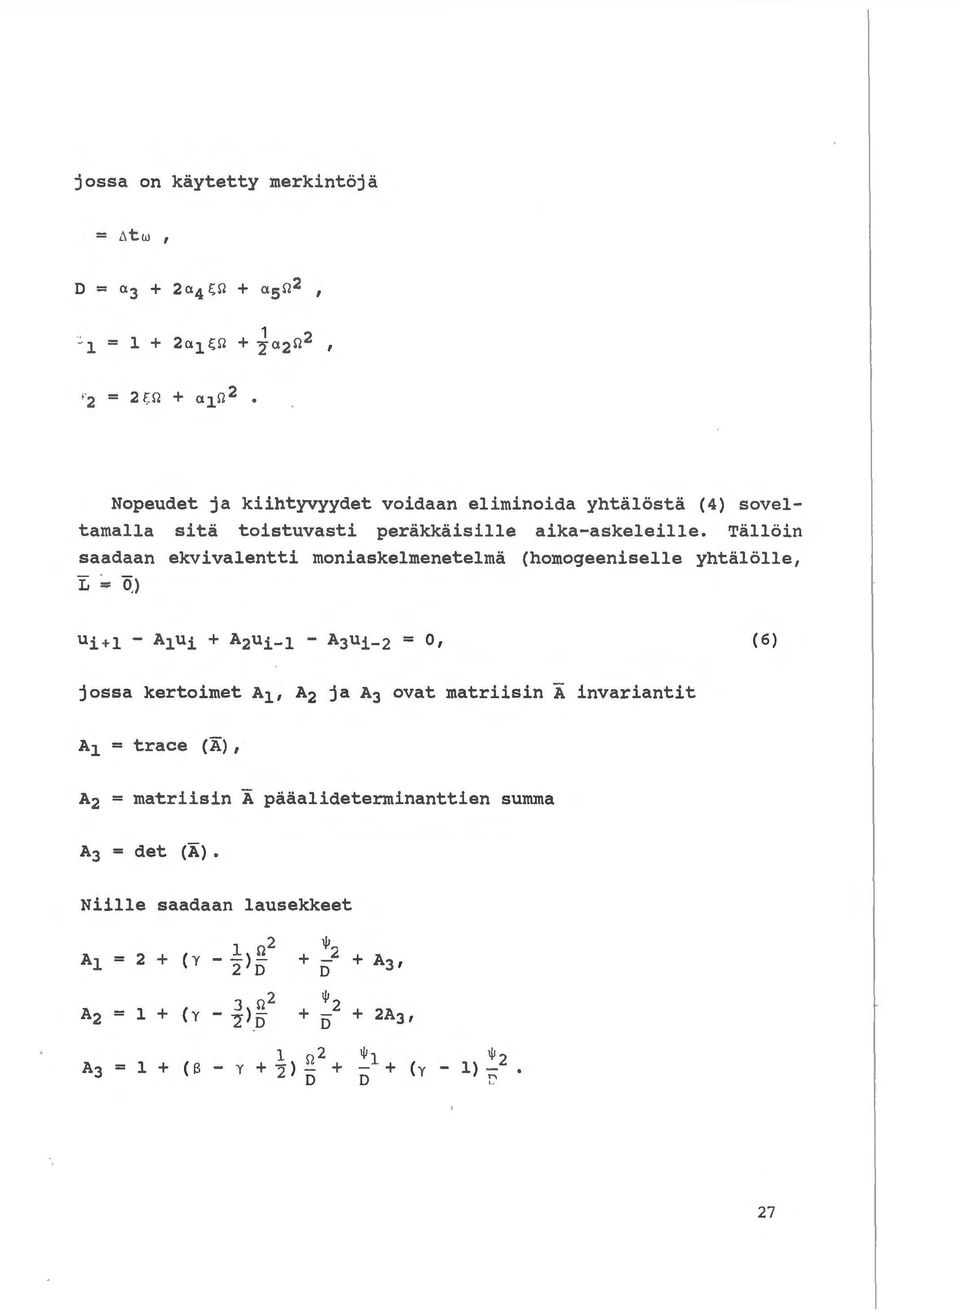 Talloin saadaan ekvivalentti moniaskelmenetelma (homogeeniselle yhtalolle 1 "E "" OJ (6) jossa kertoimet A11 A 2 ja A 3 ovat matriisin A